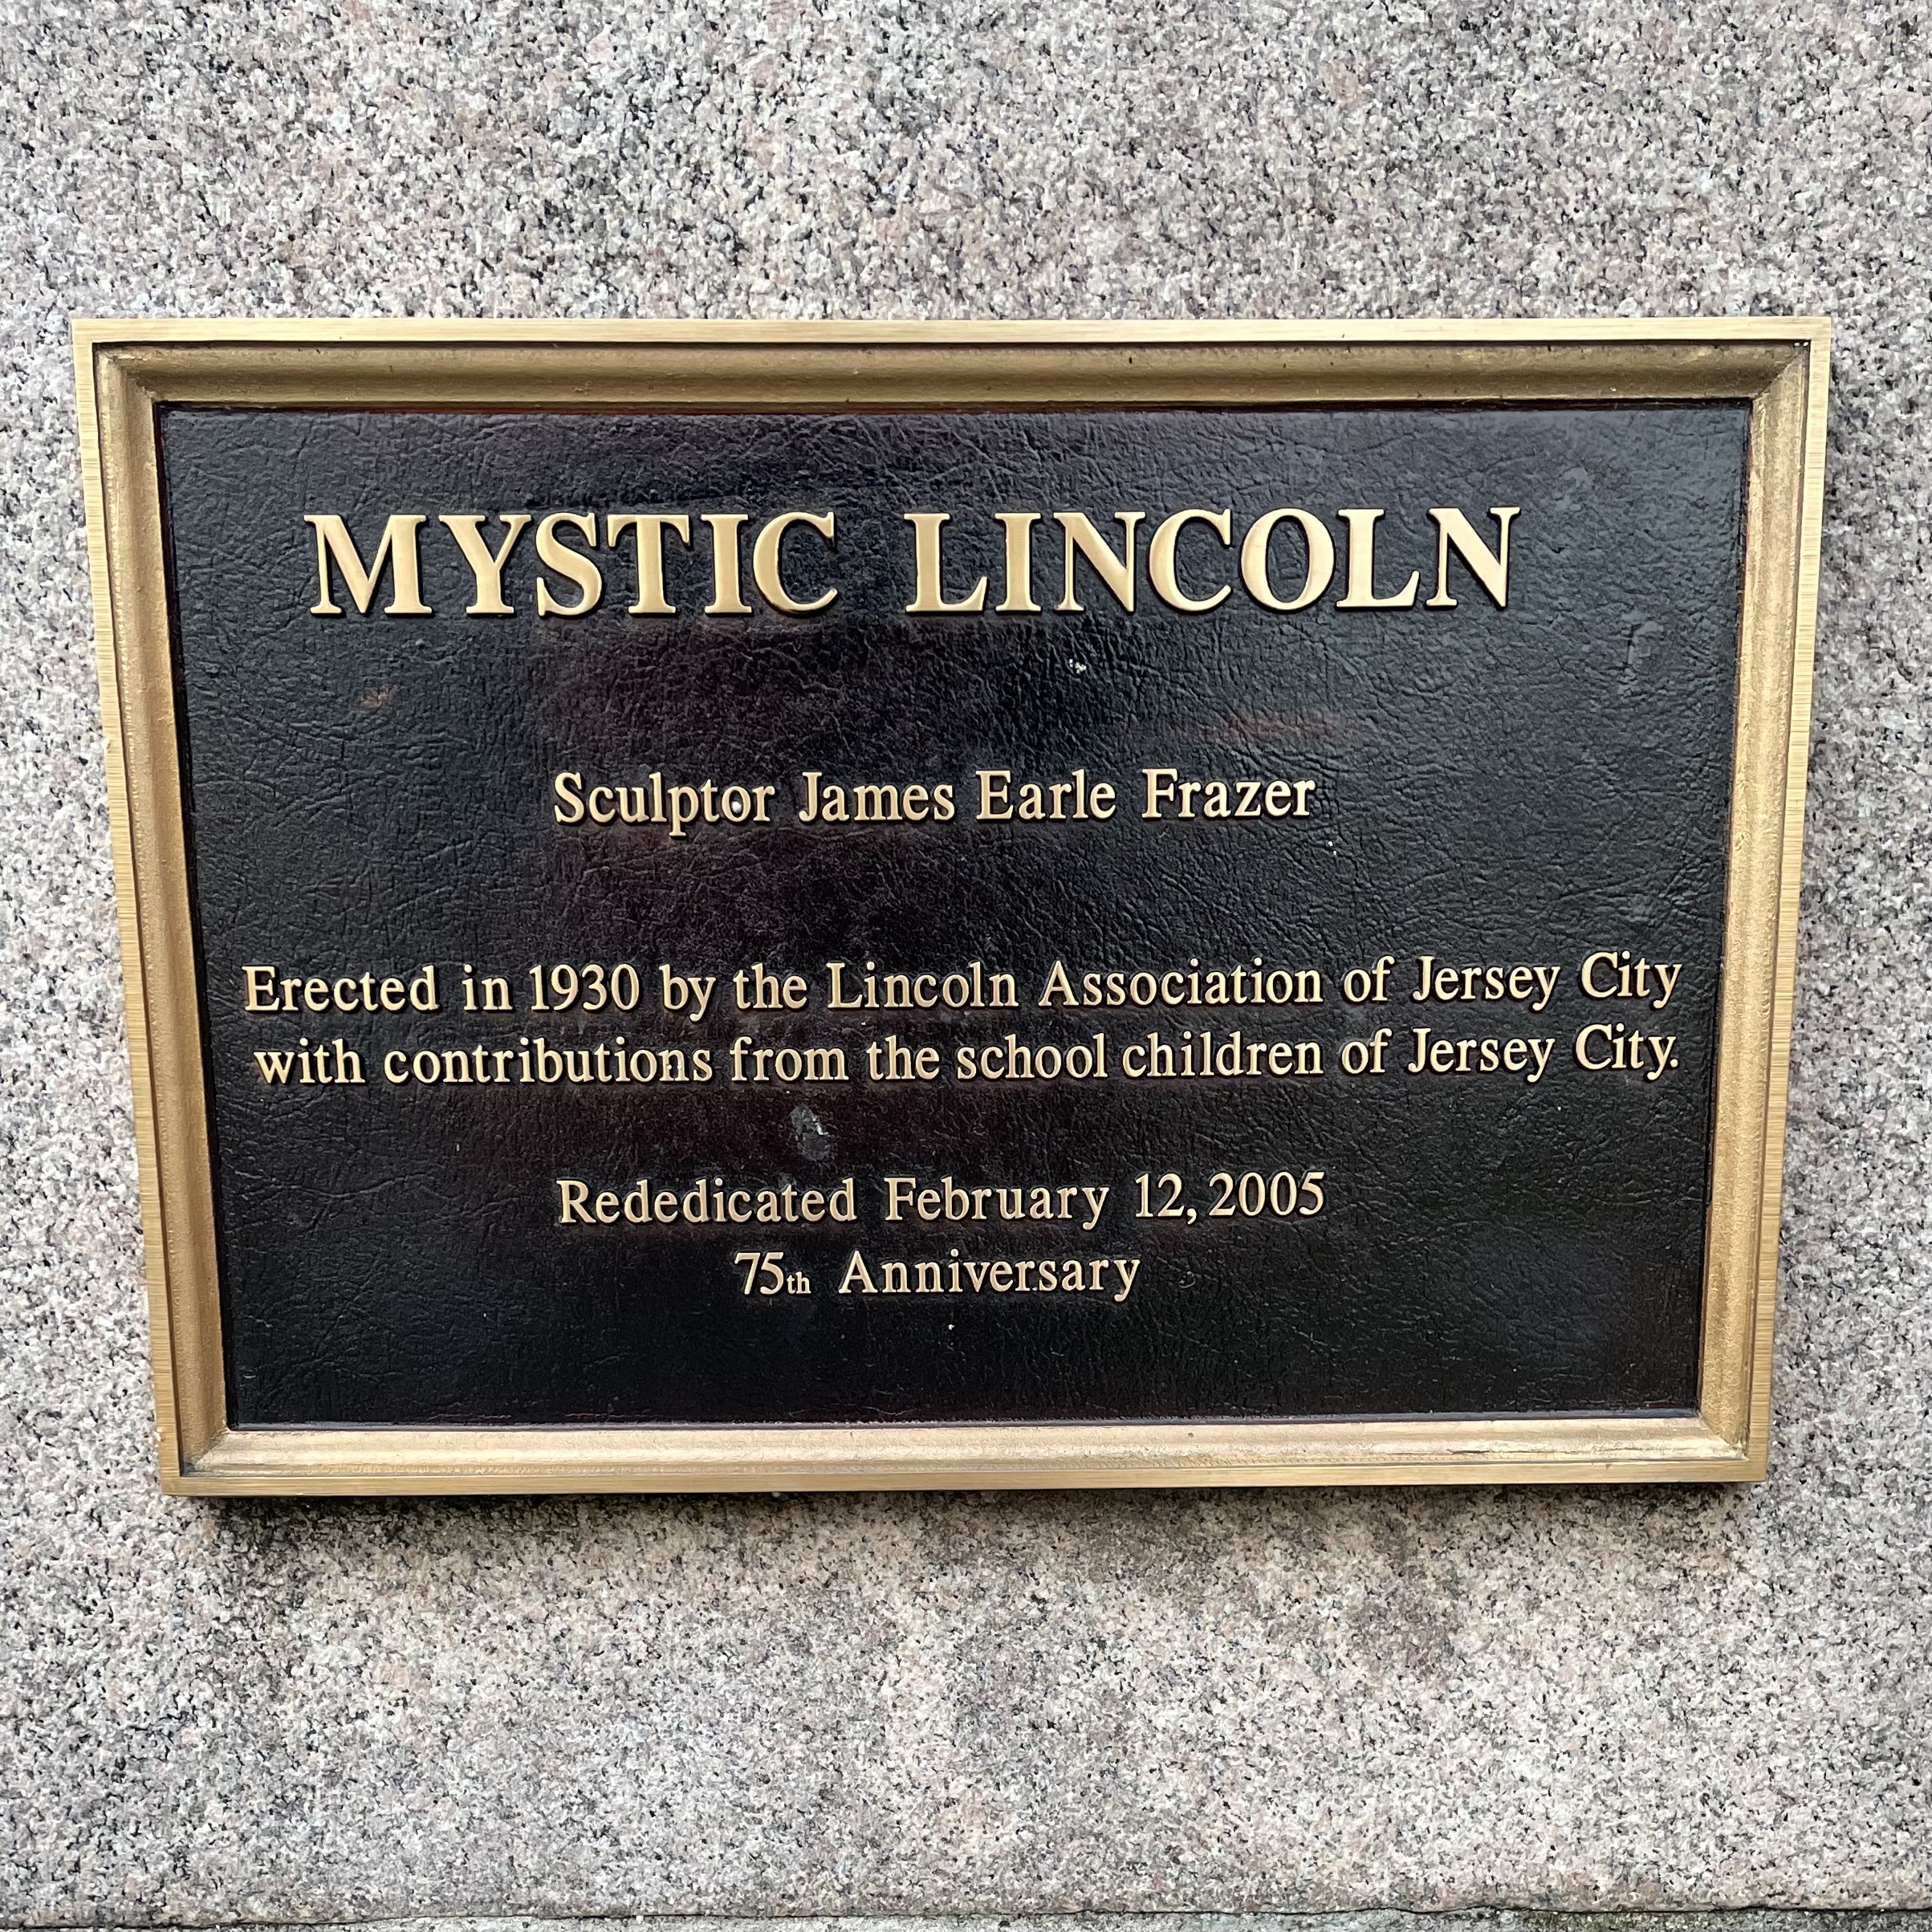 Aka "Mystic Lincoln"